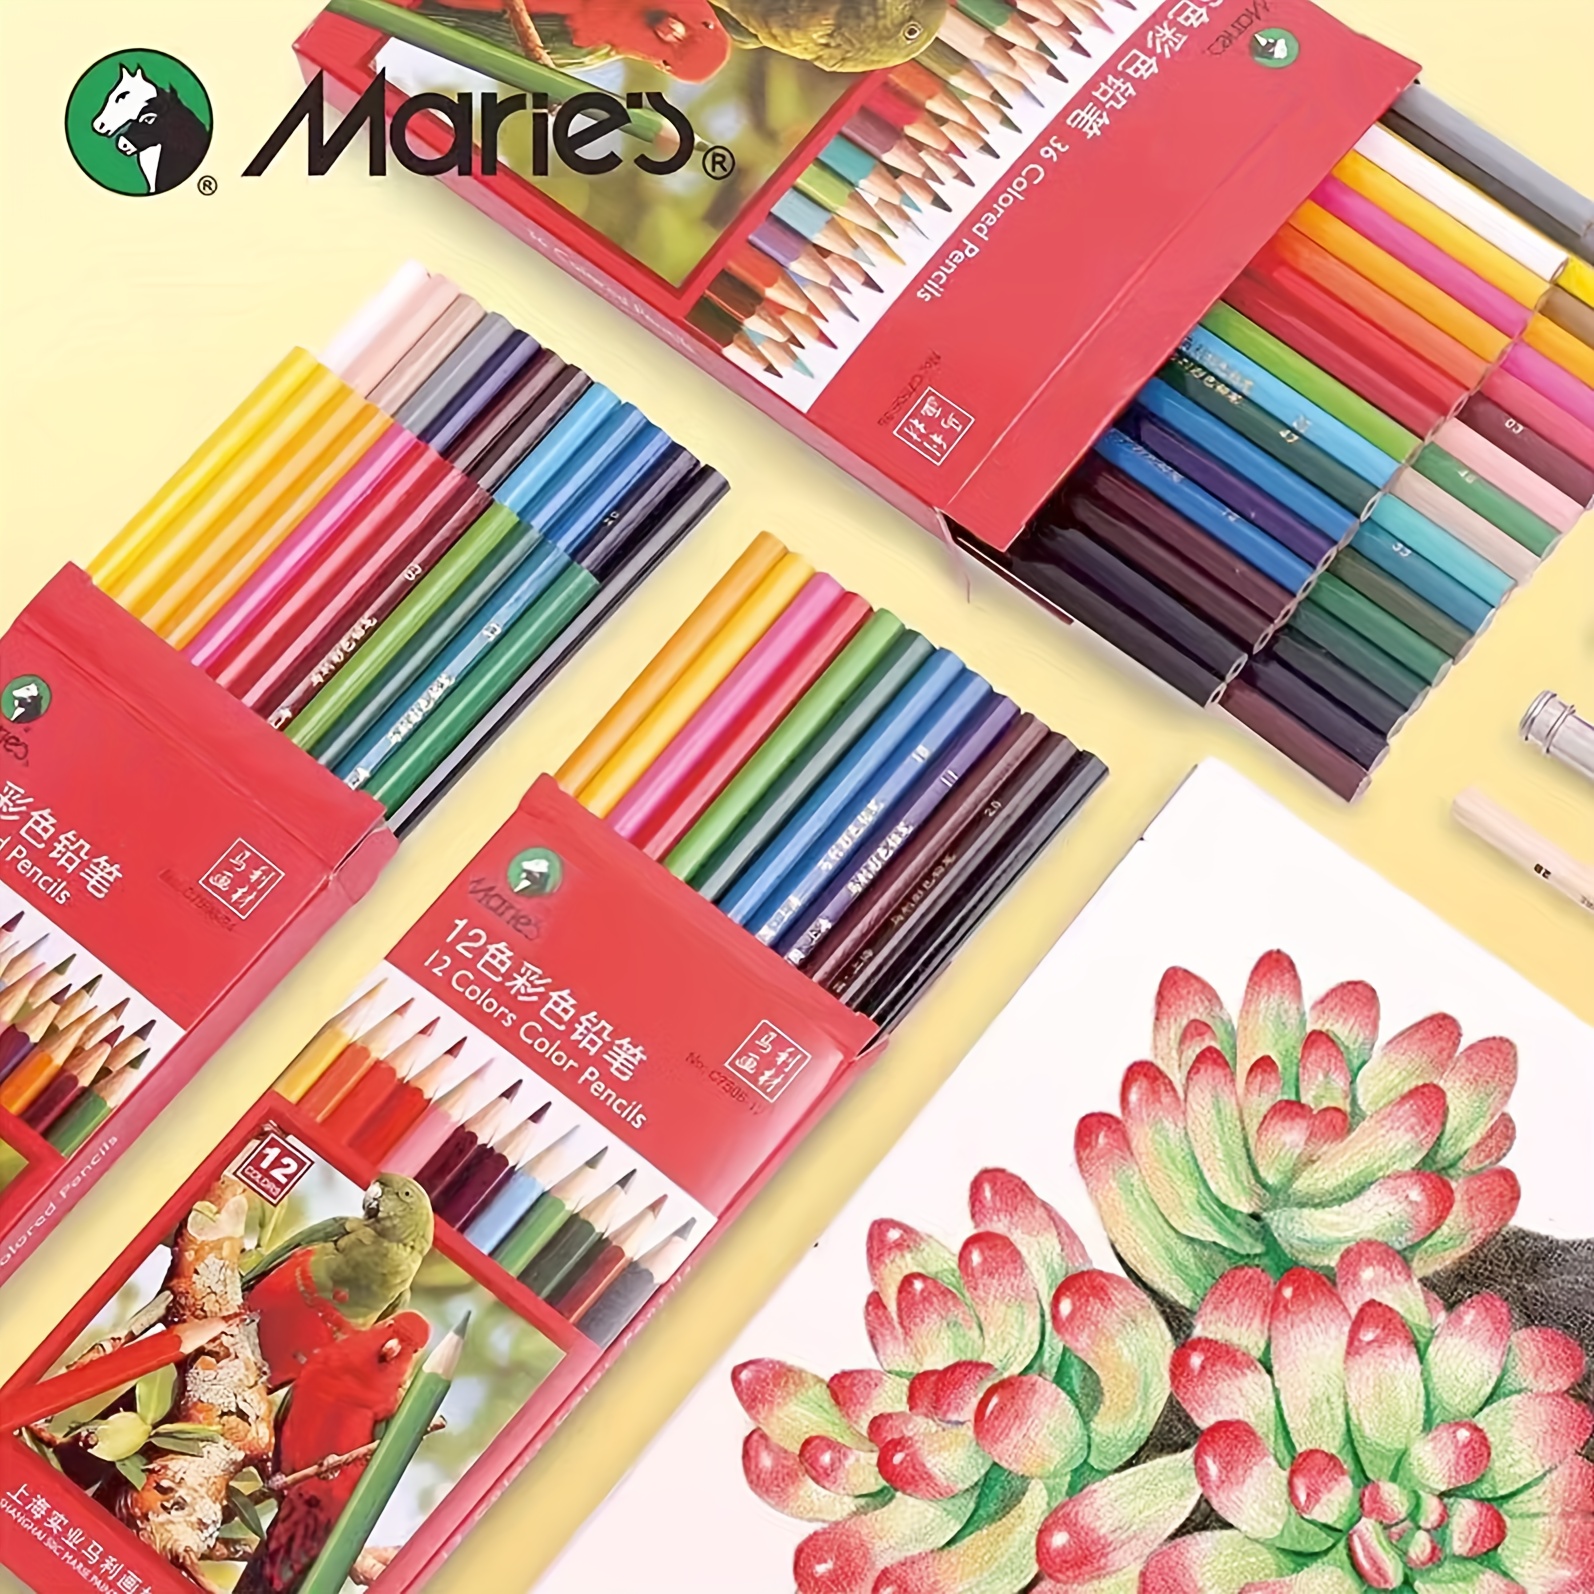 36-Color Watercolor Pencils, Water Color Pencils Set, Artist